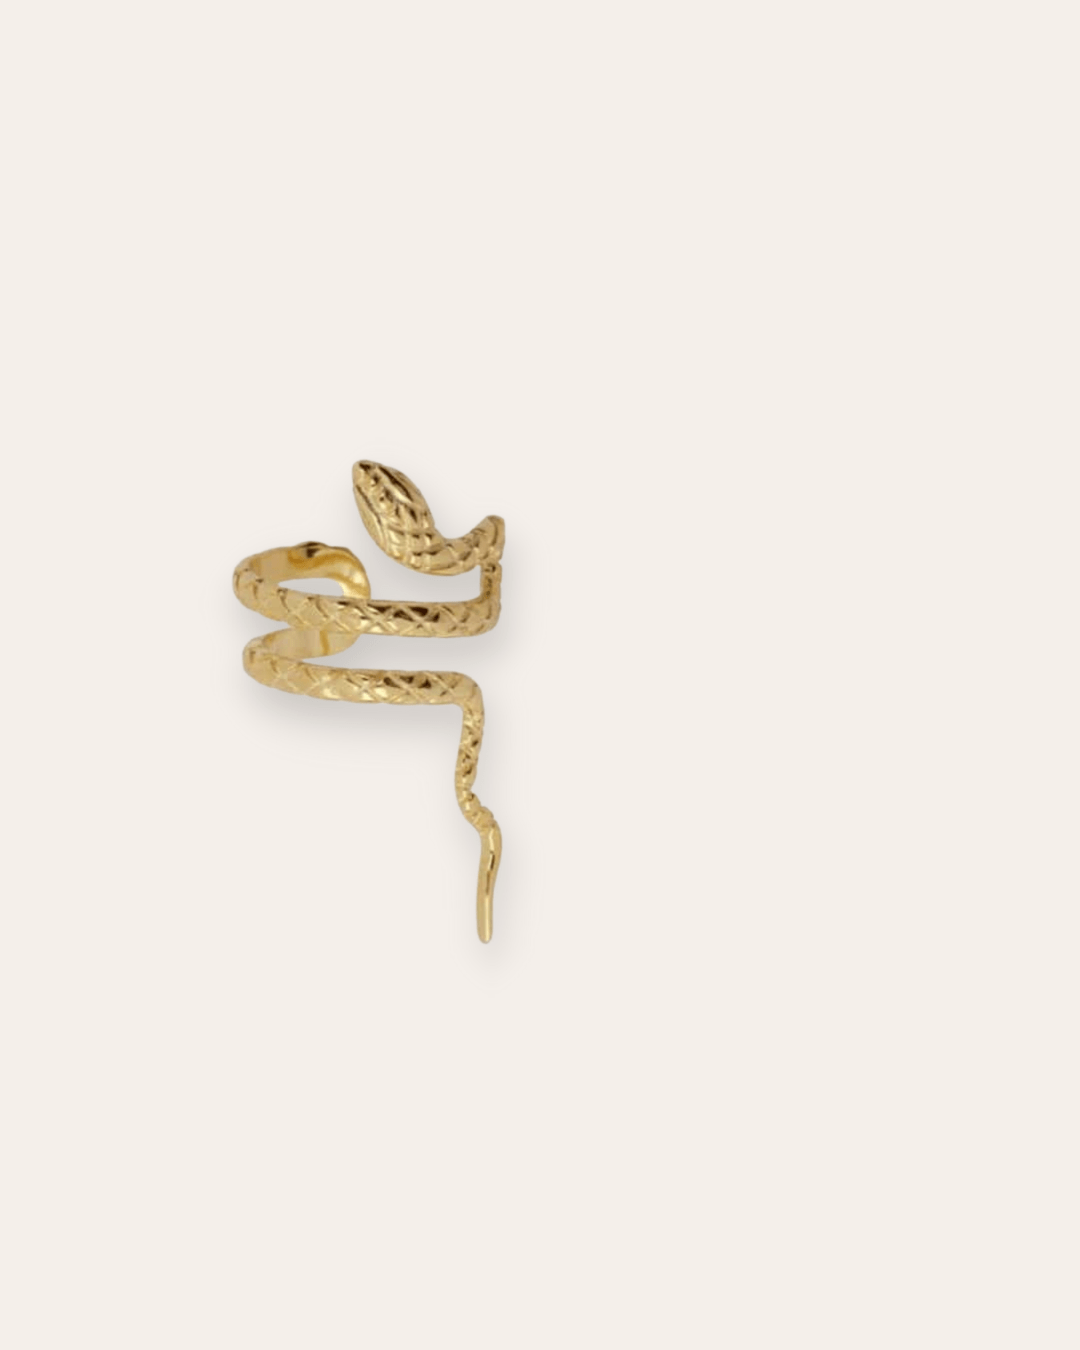 EARCUFFheyloveEarcuff serpiente | heylove